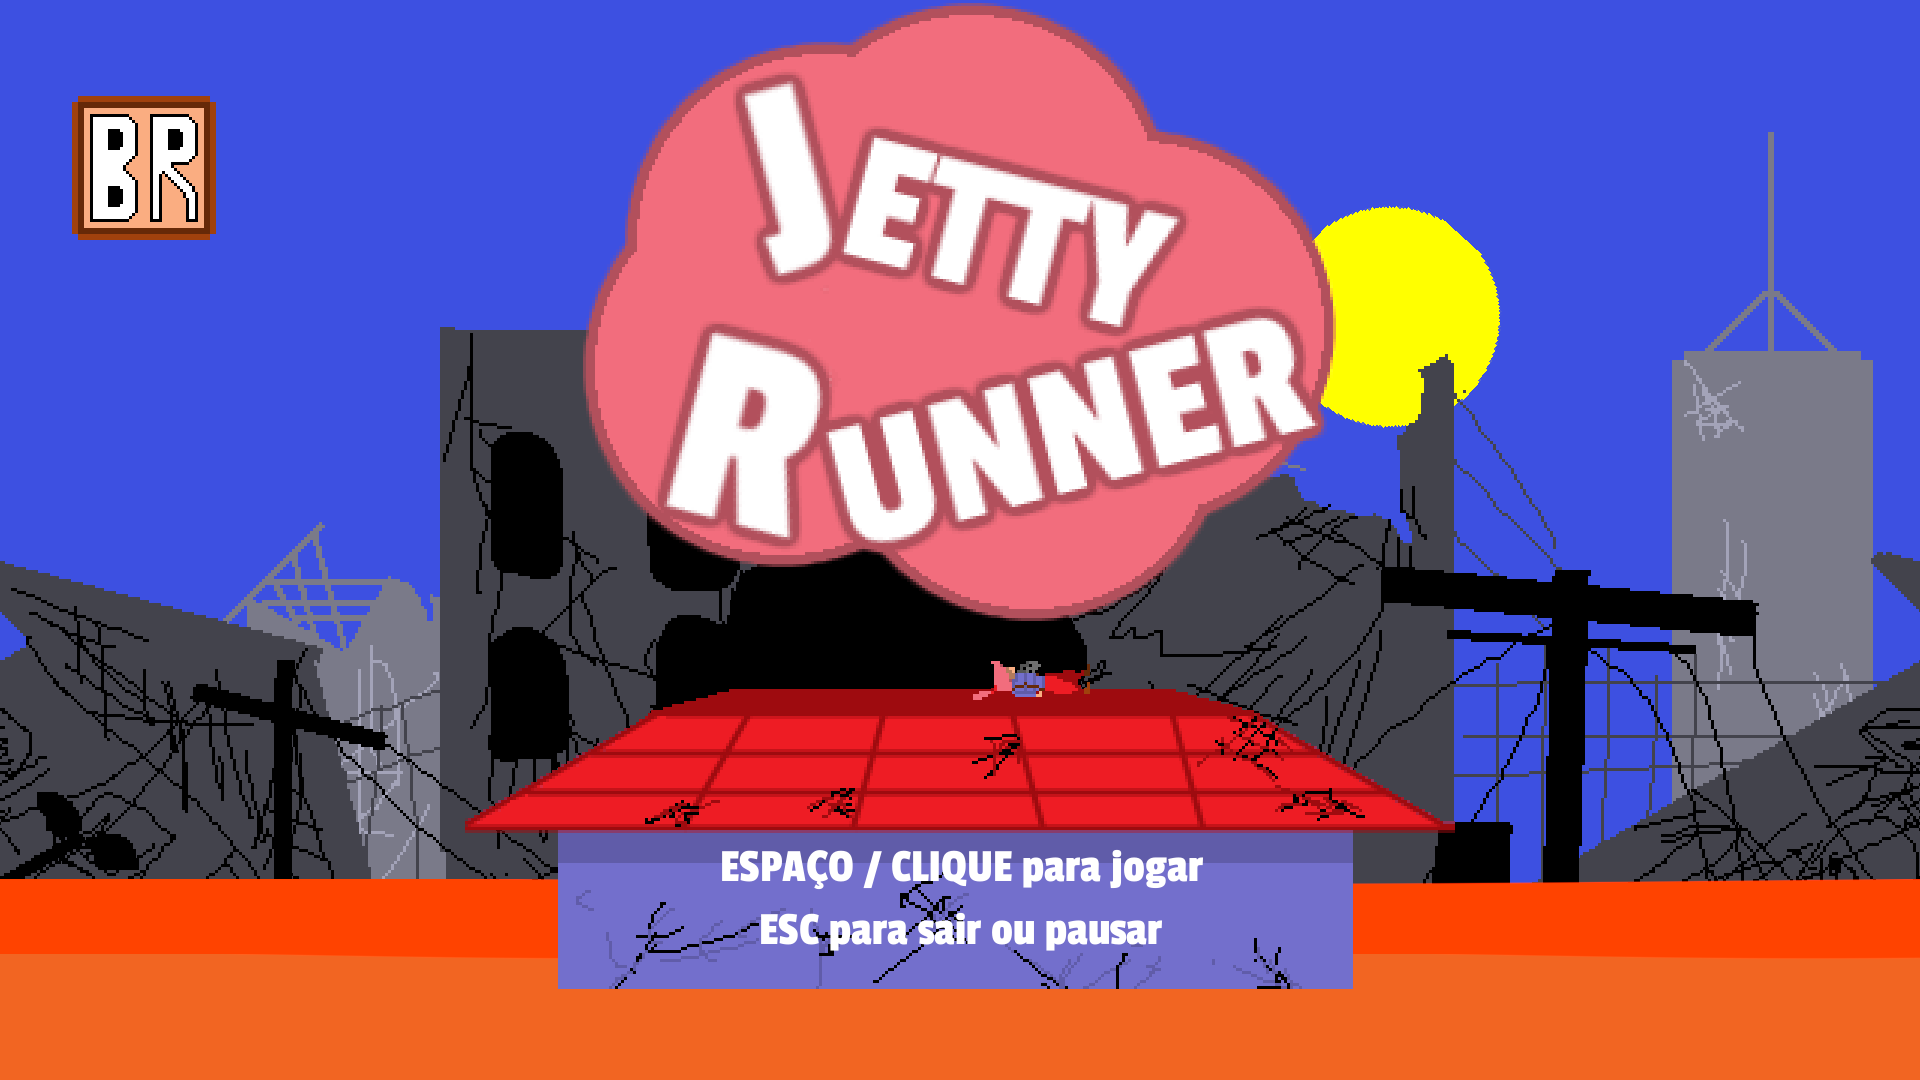 Jetty Runner